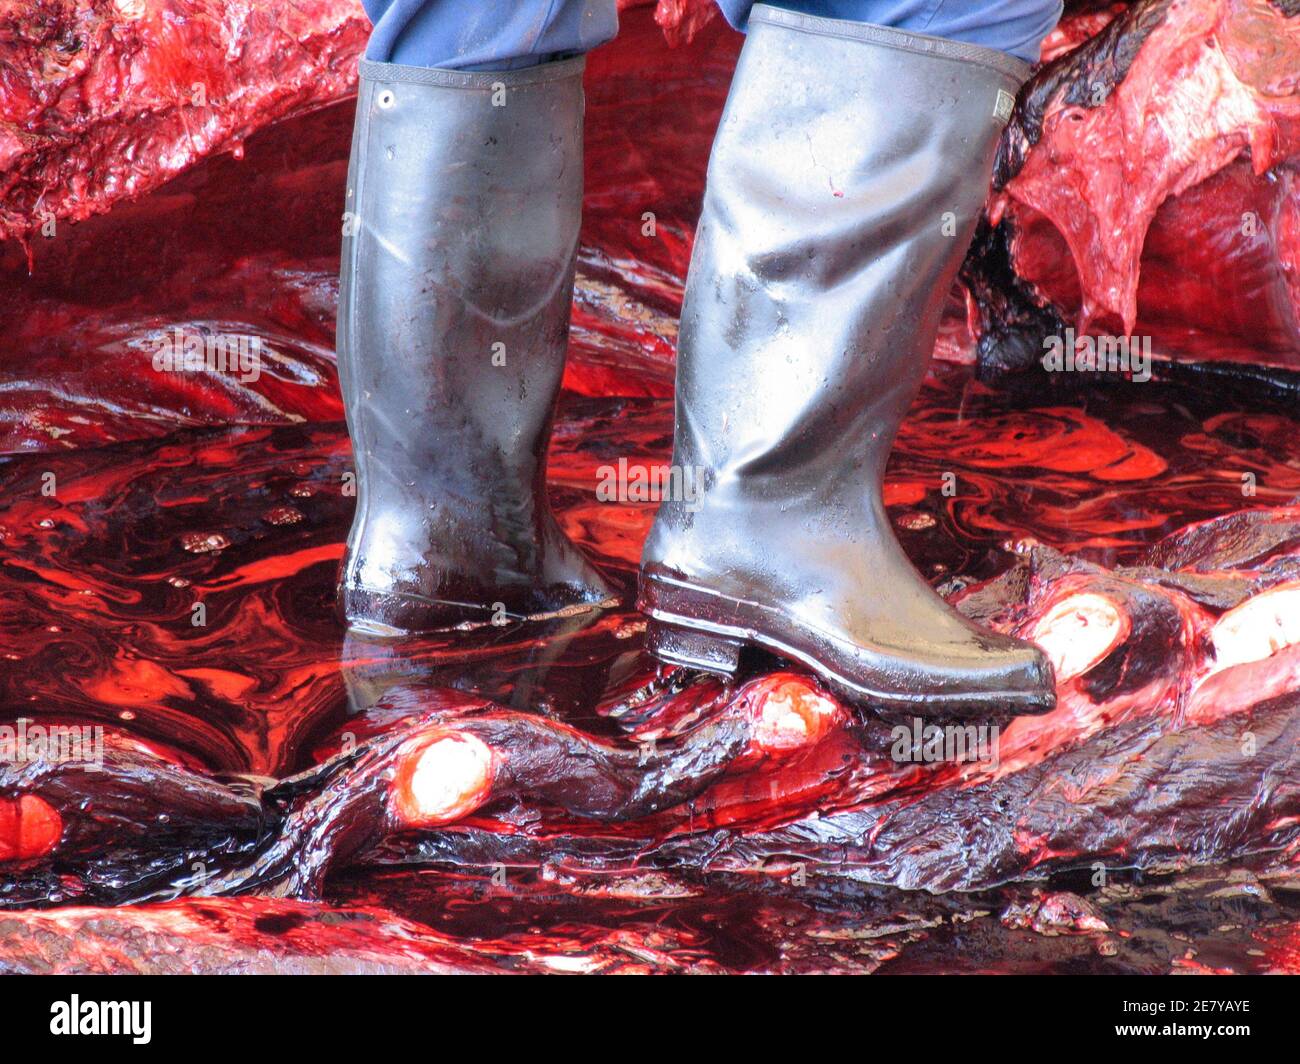 Lavoratori macellaio una balena di 11 tonnellate (10 tonnellate) Baird's Beaked Whale al porto di Wada nella prefettura di Chiba, Giappone 21 giugno 2007. Il Giappone lo scorso mese ha minacciato di abbandonare la Commissione Internazionale delle balene (IWC) dopo che l'opposizione delle nazioni anti-balene alla riunione annuale del gruppo ha costretto il paese a scartare una proposta per consentire a quattro villaggi costieri di uccidere le balene minke. REUTERS/Olivier Fabre (GIAPPONE) Foto Stock